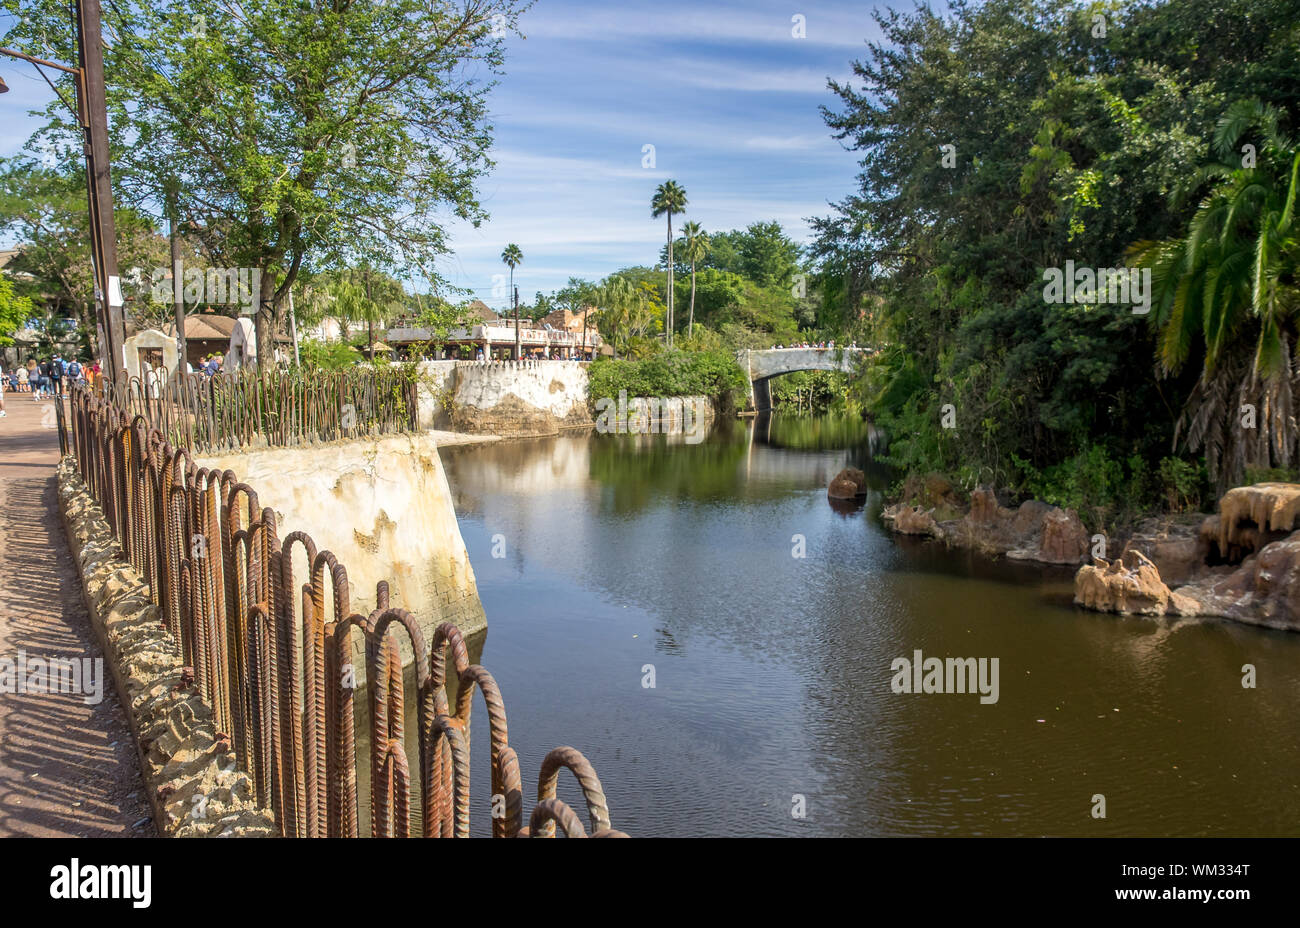 Las multitudes disfrutar del Parque Temático Animal Kingdom de Disney World en Orlando, Florida. Los edificios son visibles en la sección africana del parque. Foto de stock